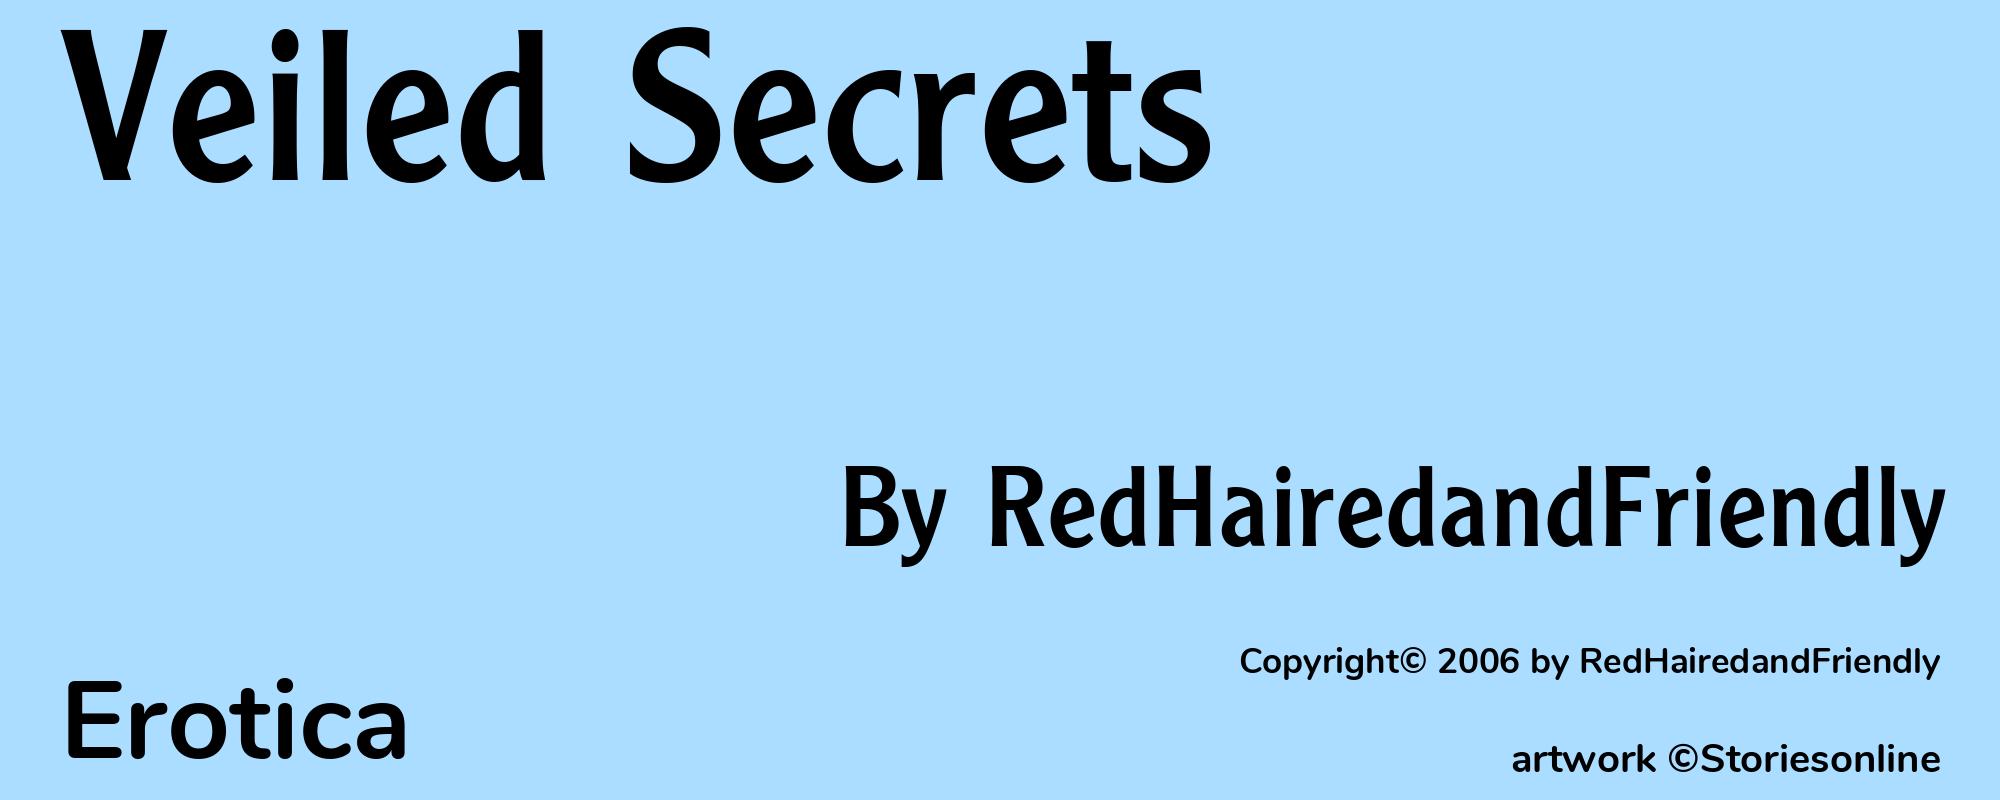 Veiled Secrets - Cover